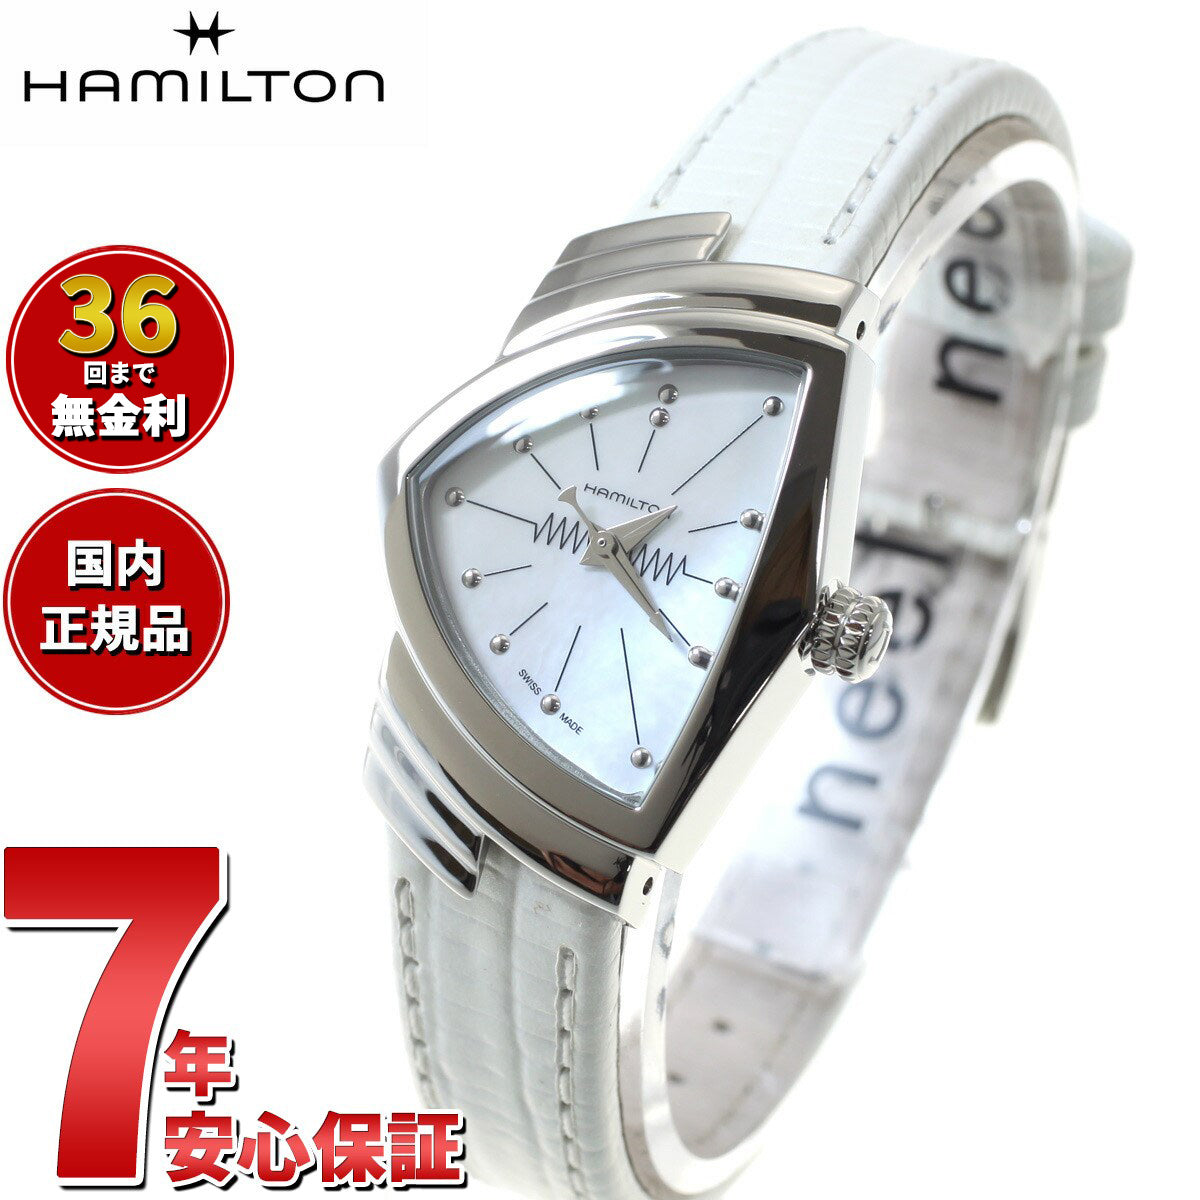 約12-16cmバンド幅【新品】ハミルトン HAMILTON 腕時計 レディース H24211732 ベンチュラ VENTURA クオーツ ブラックxブラック アナログ表示